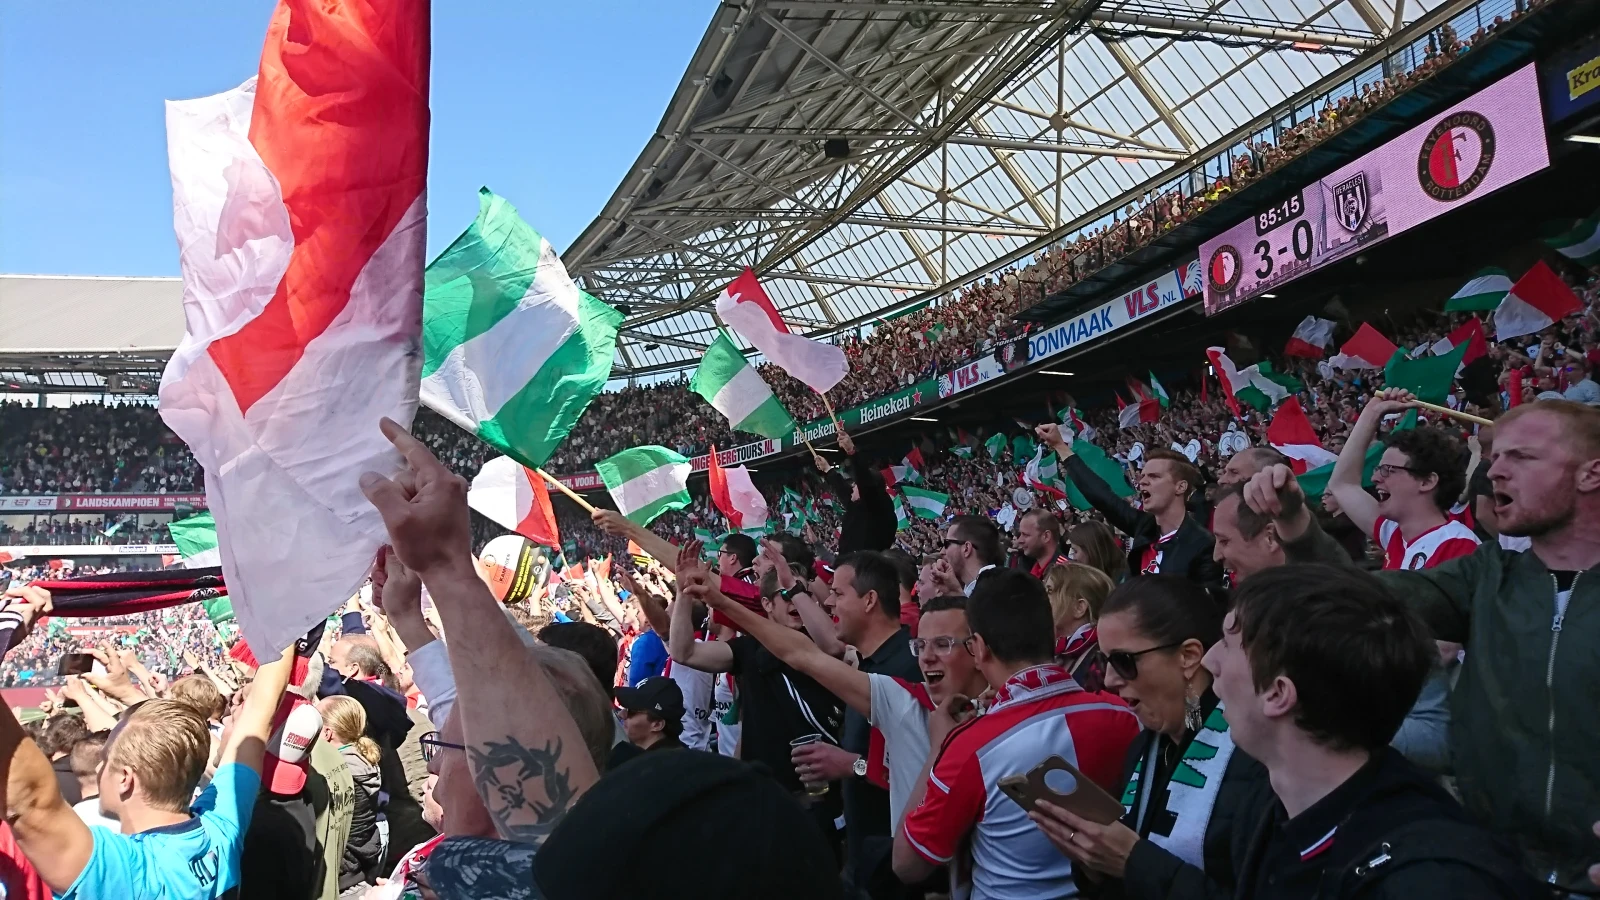 Wedstrijd tussen Slavia Praag en Feyenoord live uitgezonden op 'open net'